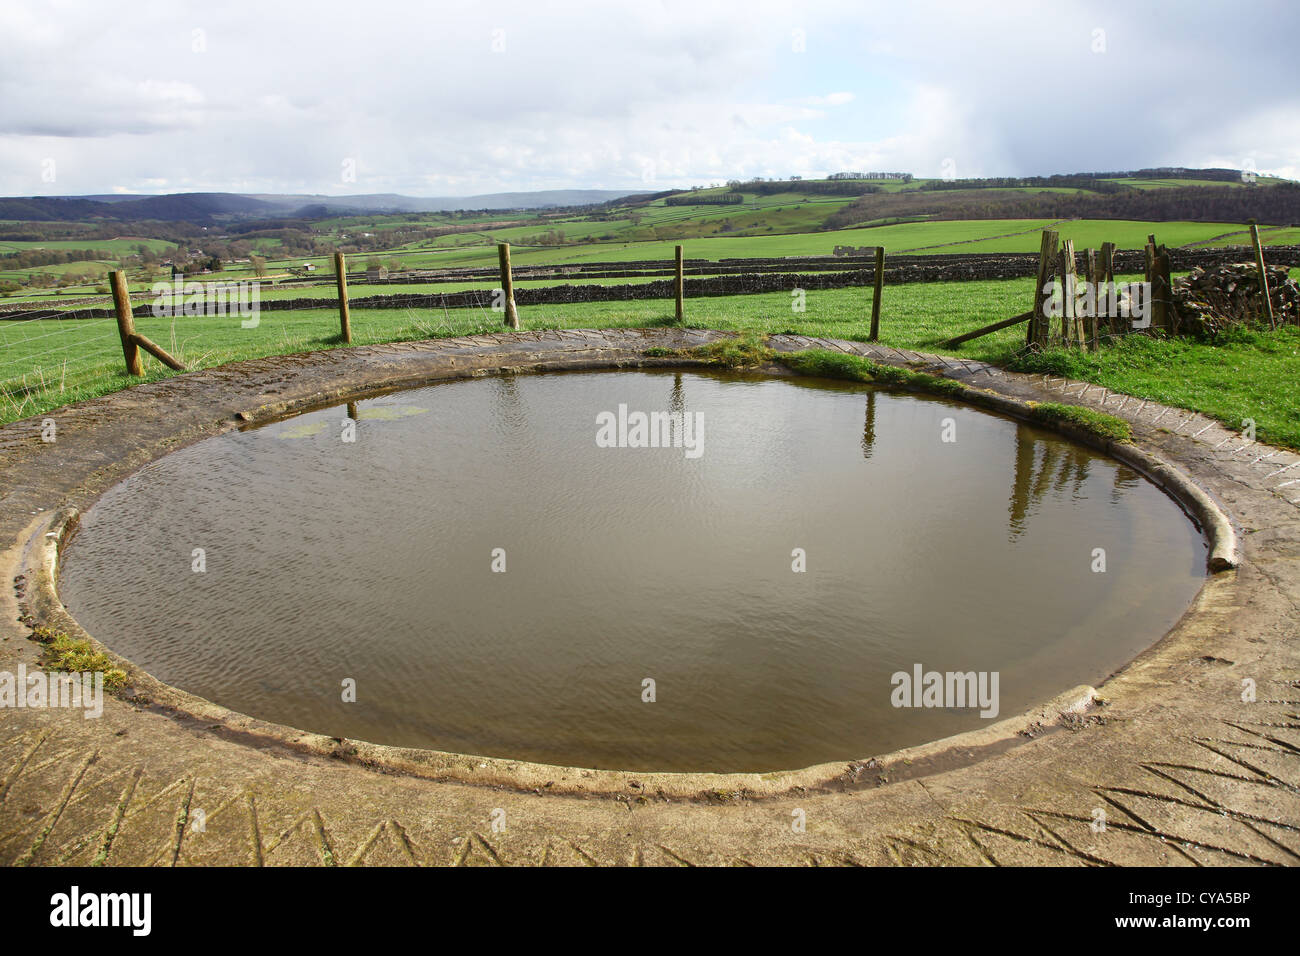 Une restauration de l'étang de rosée dans le régime de la zone de pic blanc du parc national de Peak District près de Dale Monsal Derbyshire England UK Banque D'Images